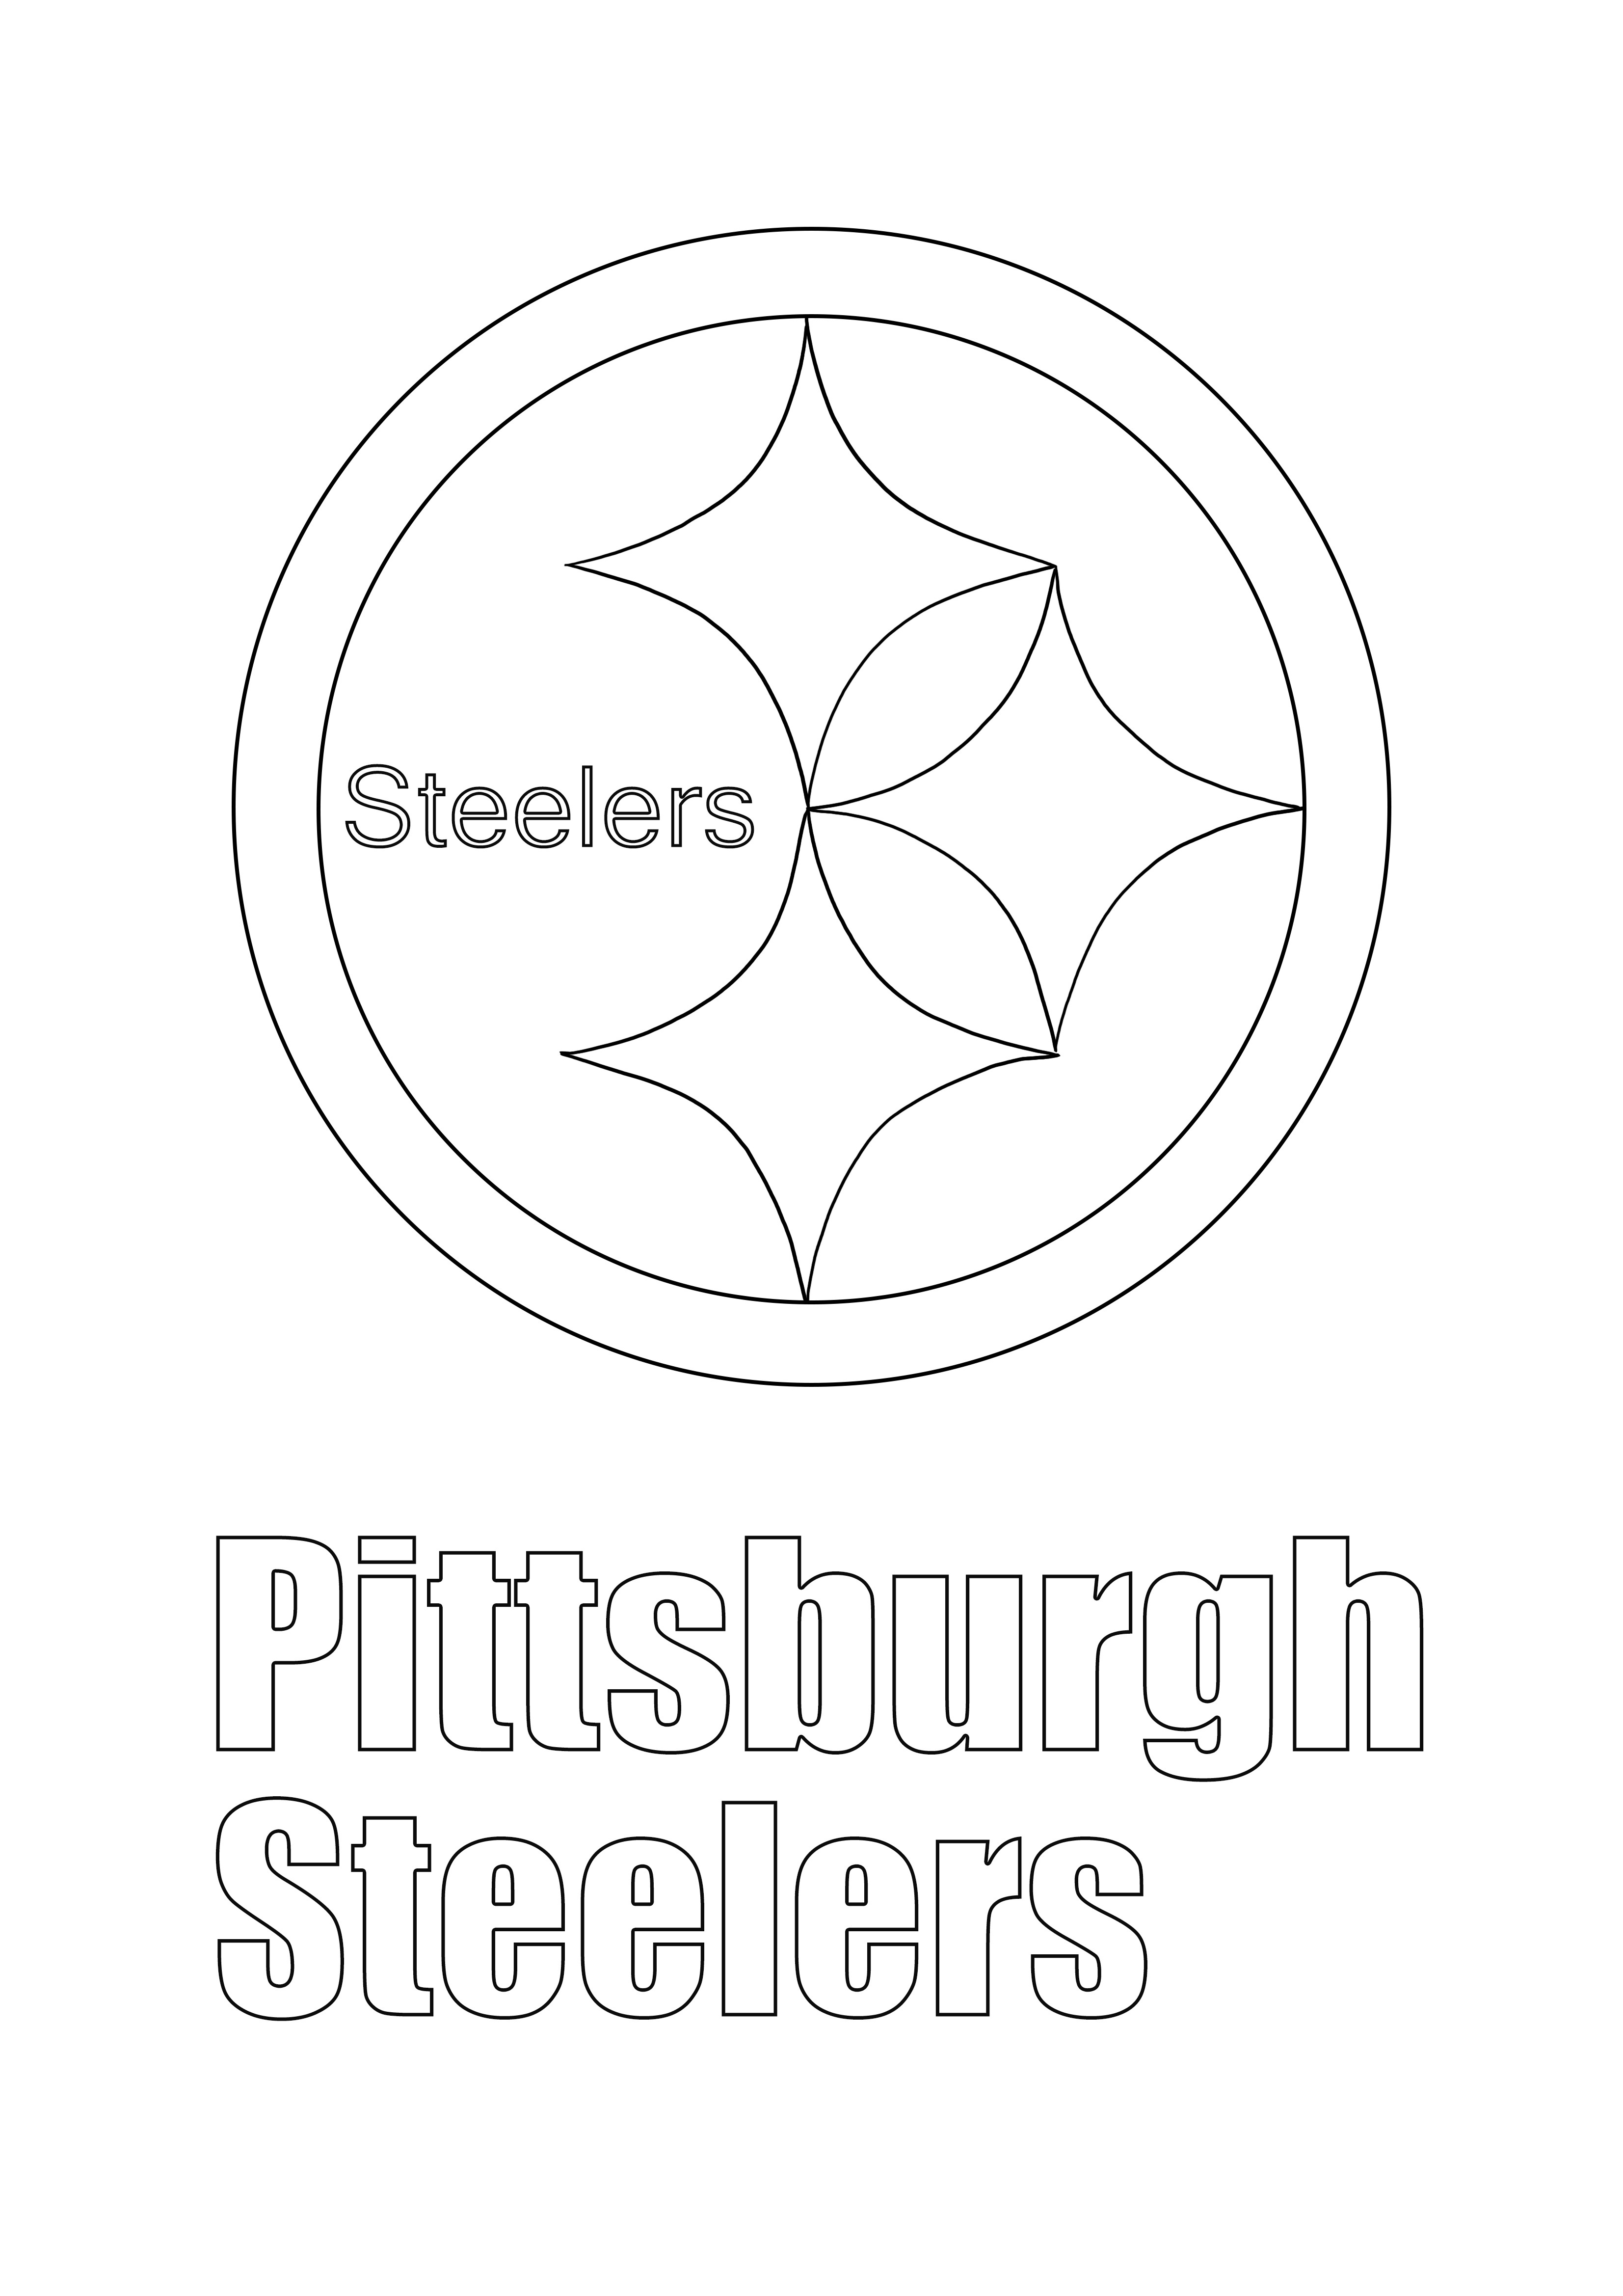 Pittsburgh Steelers Logosu yazdırmak veya sonrası için kaydetmek için ücretsiz kolay boyama sayfası